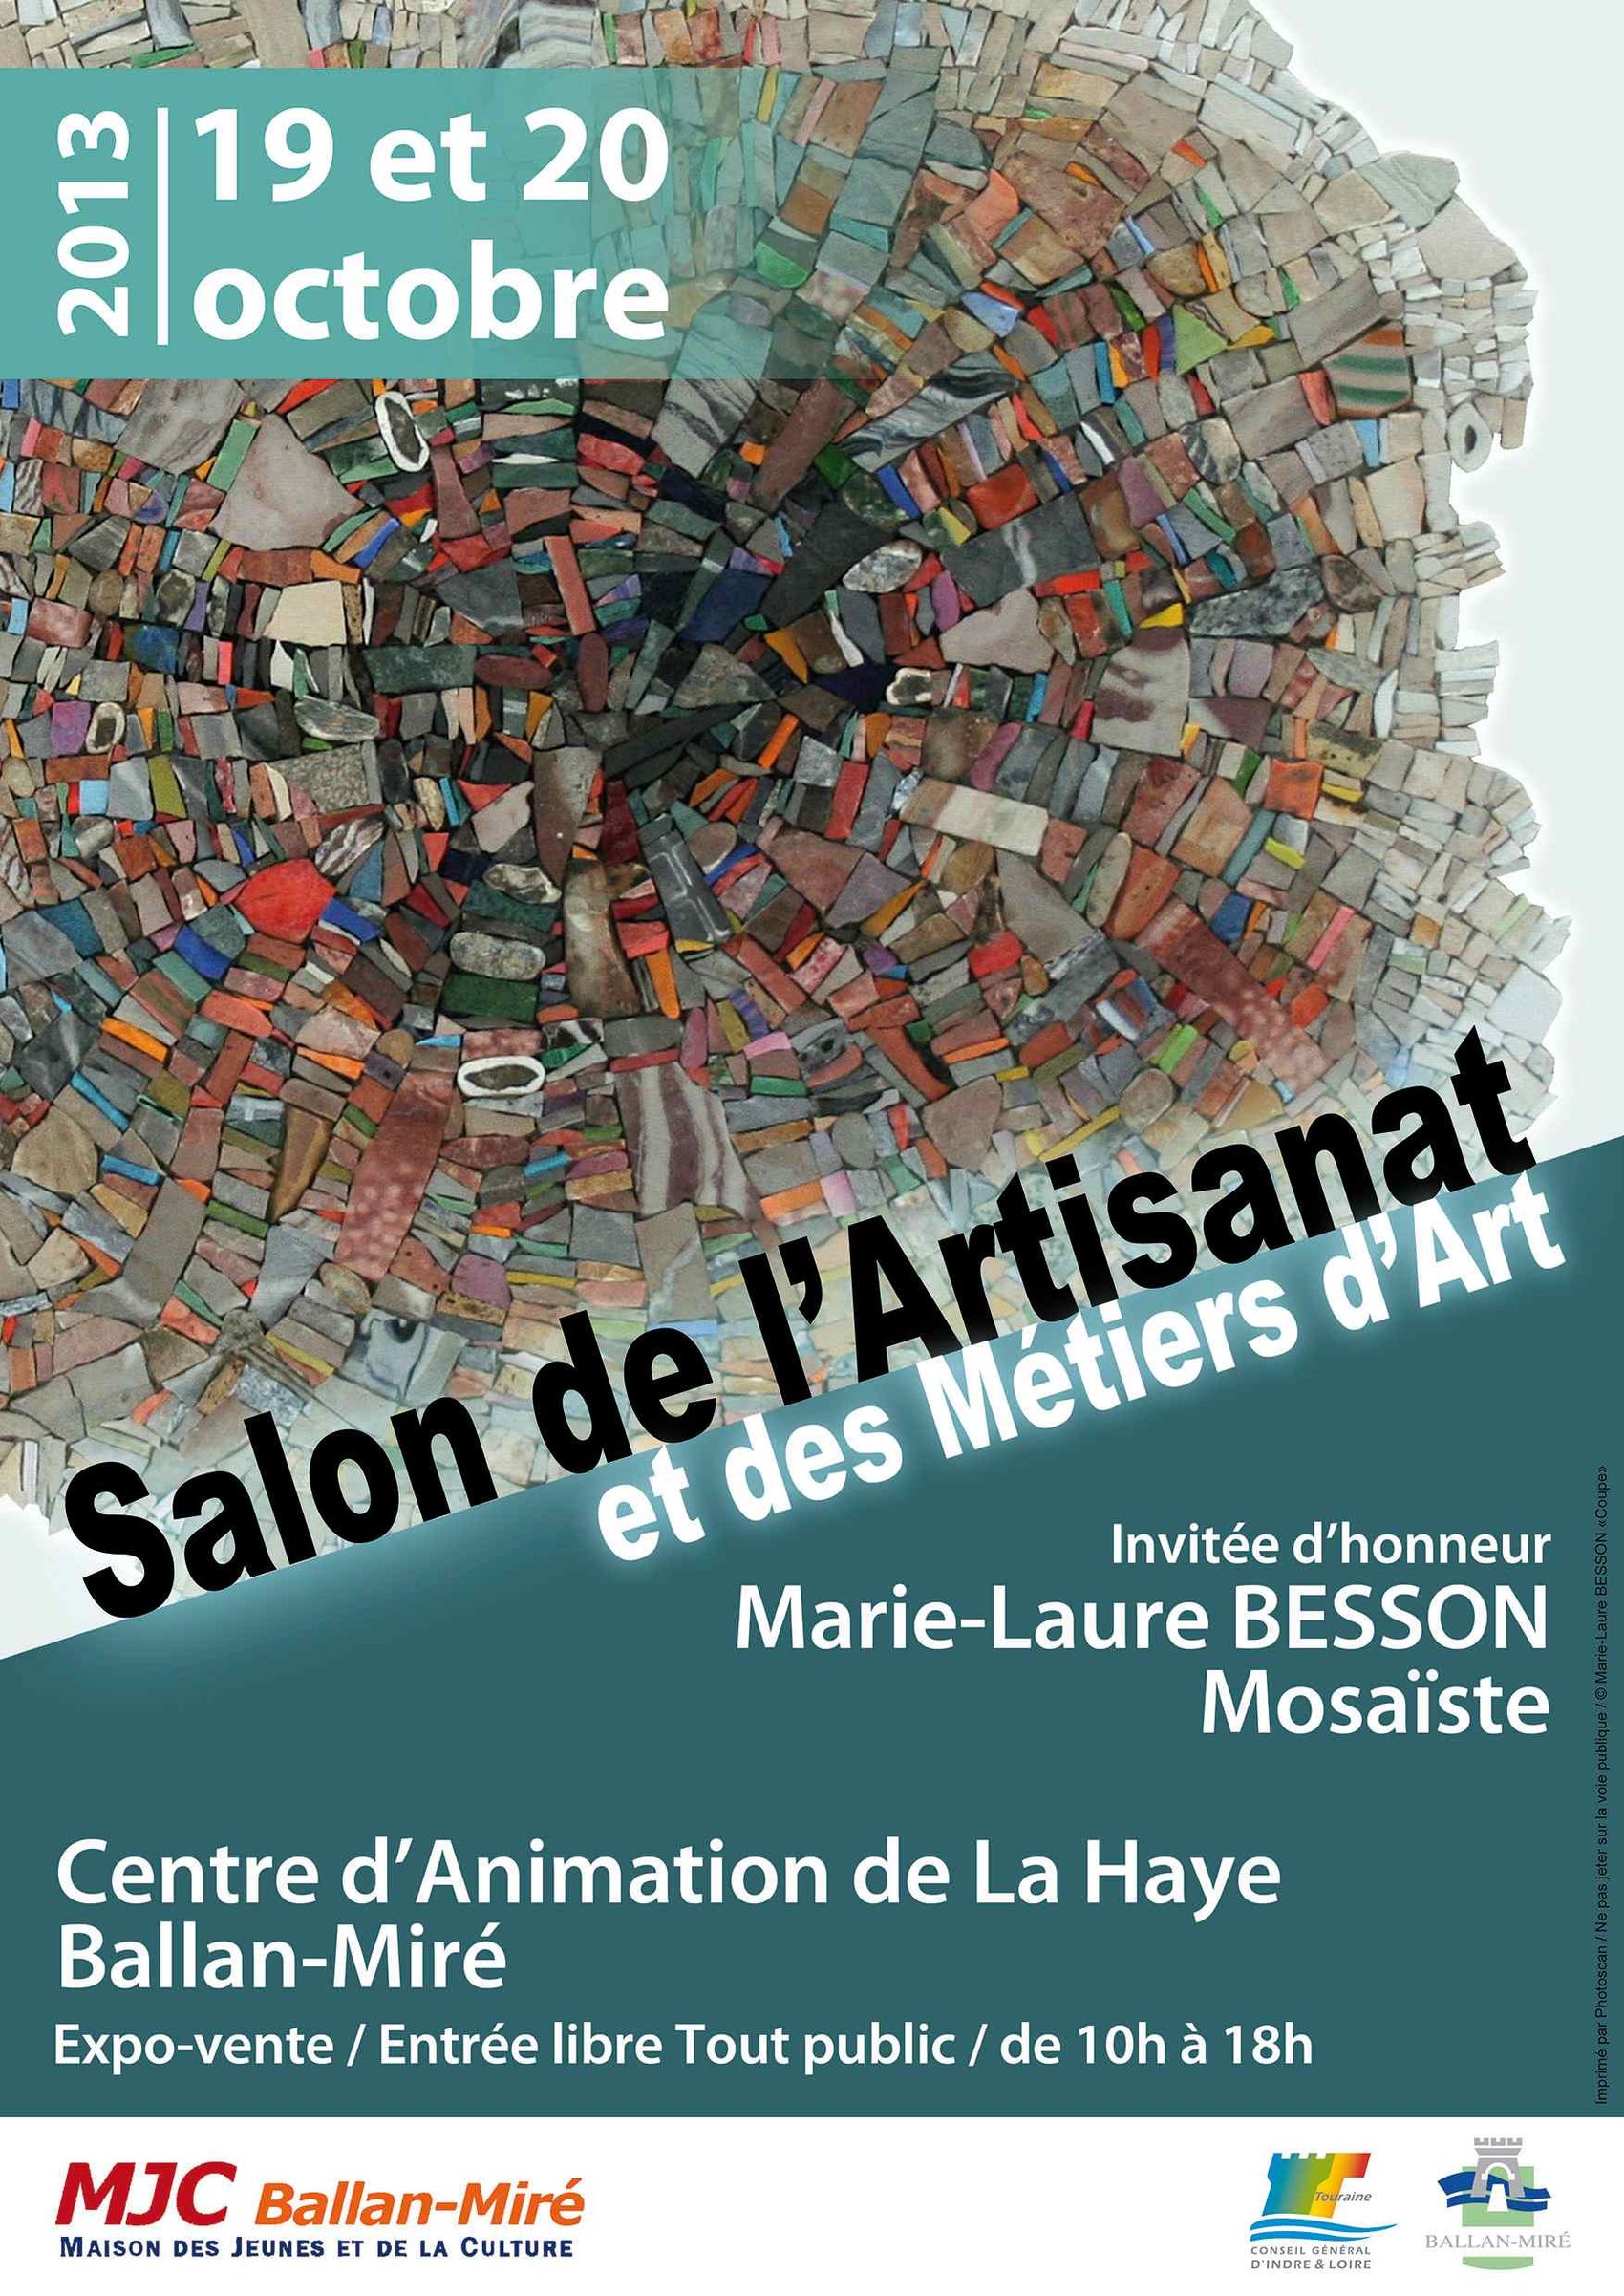 Salon de l'Artisana&#8203;t et des Métiers d'Art de Ballan-Mir&#8203;é